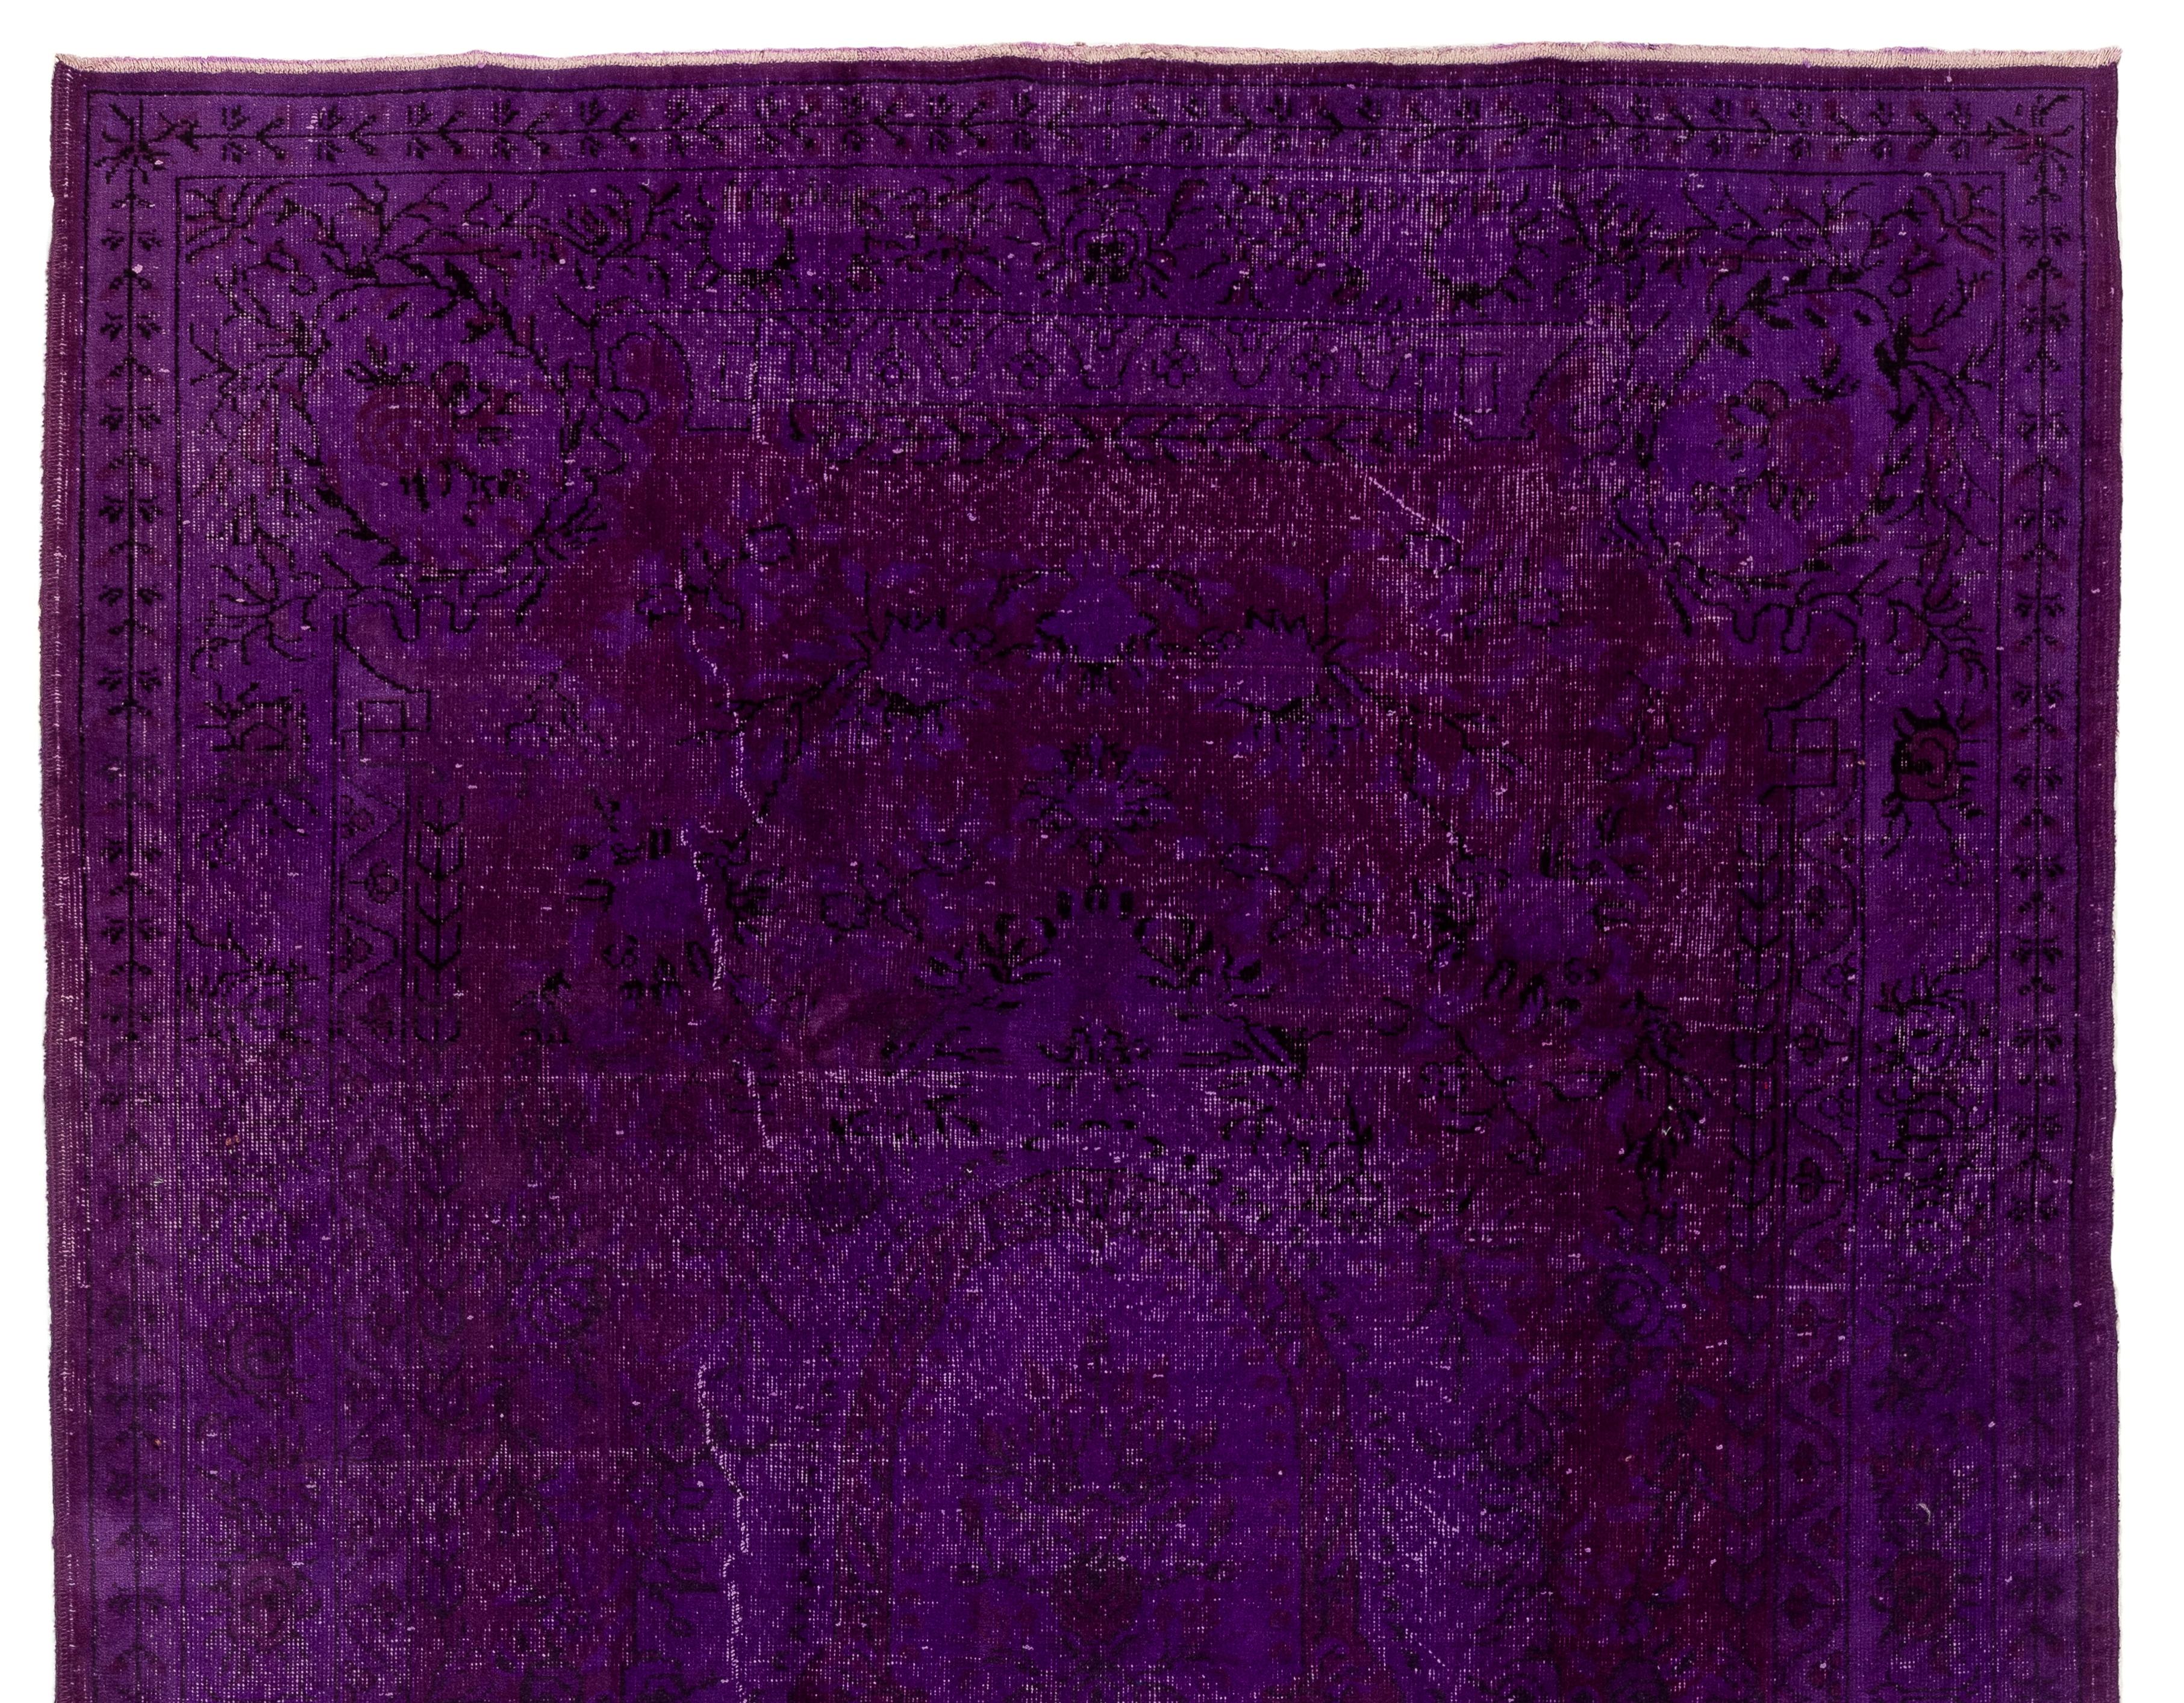 Ein türkischer Vintage-Teppich, neu gefärbt in lila Farbe.
Fein handgeknüpft, niedriger Wollflor auf Baumwollbasis. Tief gewaschen.
Robust und geeignet für stark frequentierte Bereiche, sowohl für Wohn- als auch für Geschäftsräume. Maße: 7 x 10